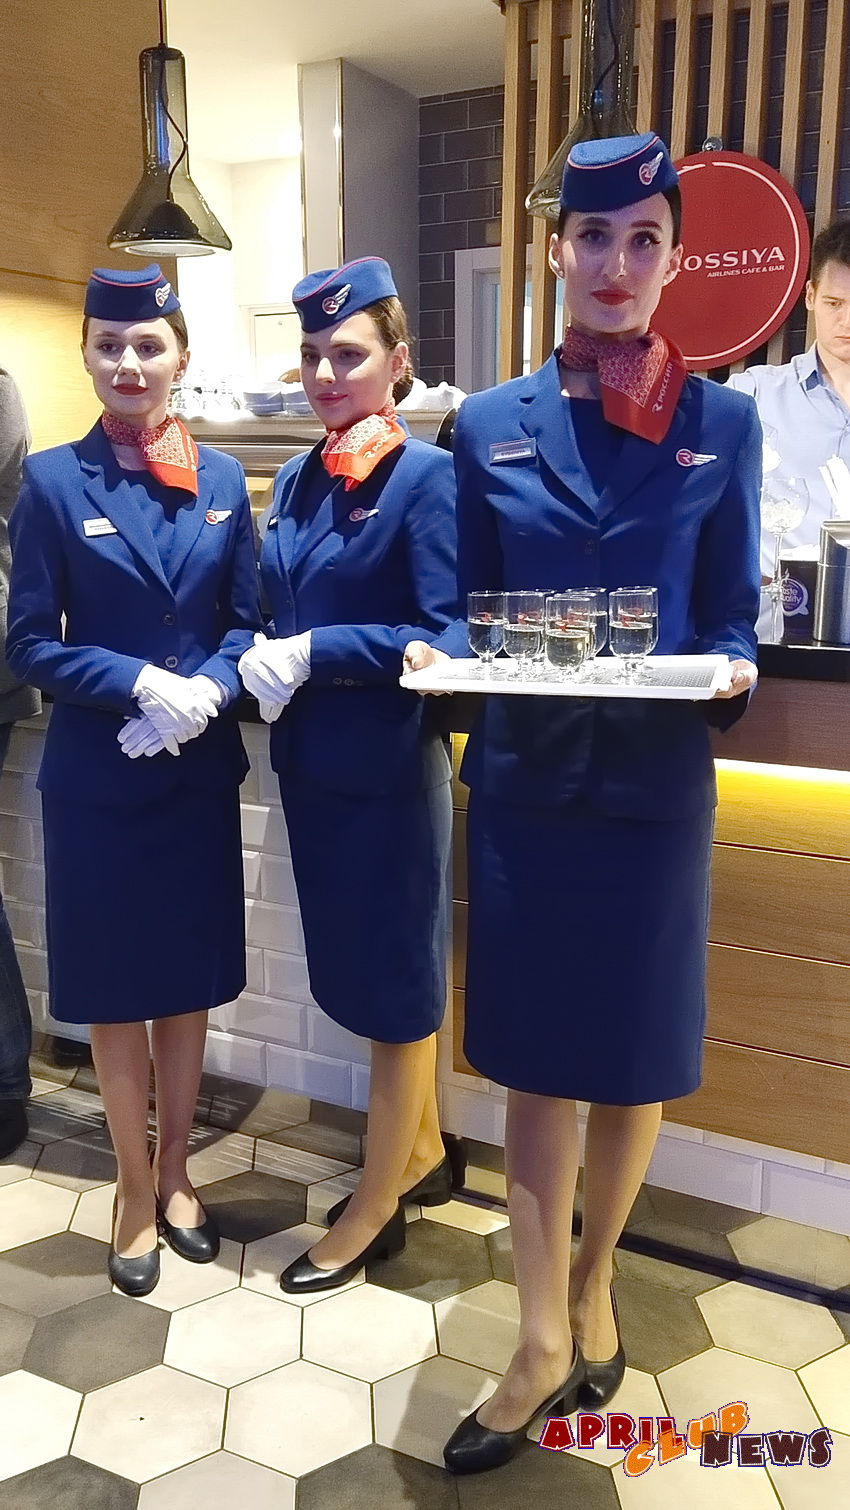 Rossiya Airlines Café&Bar